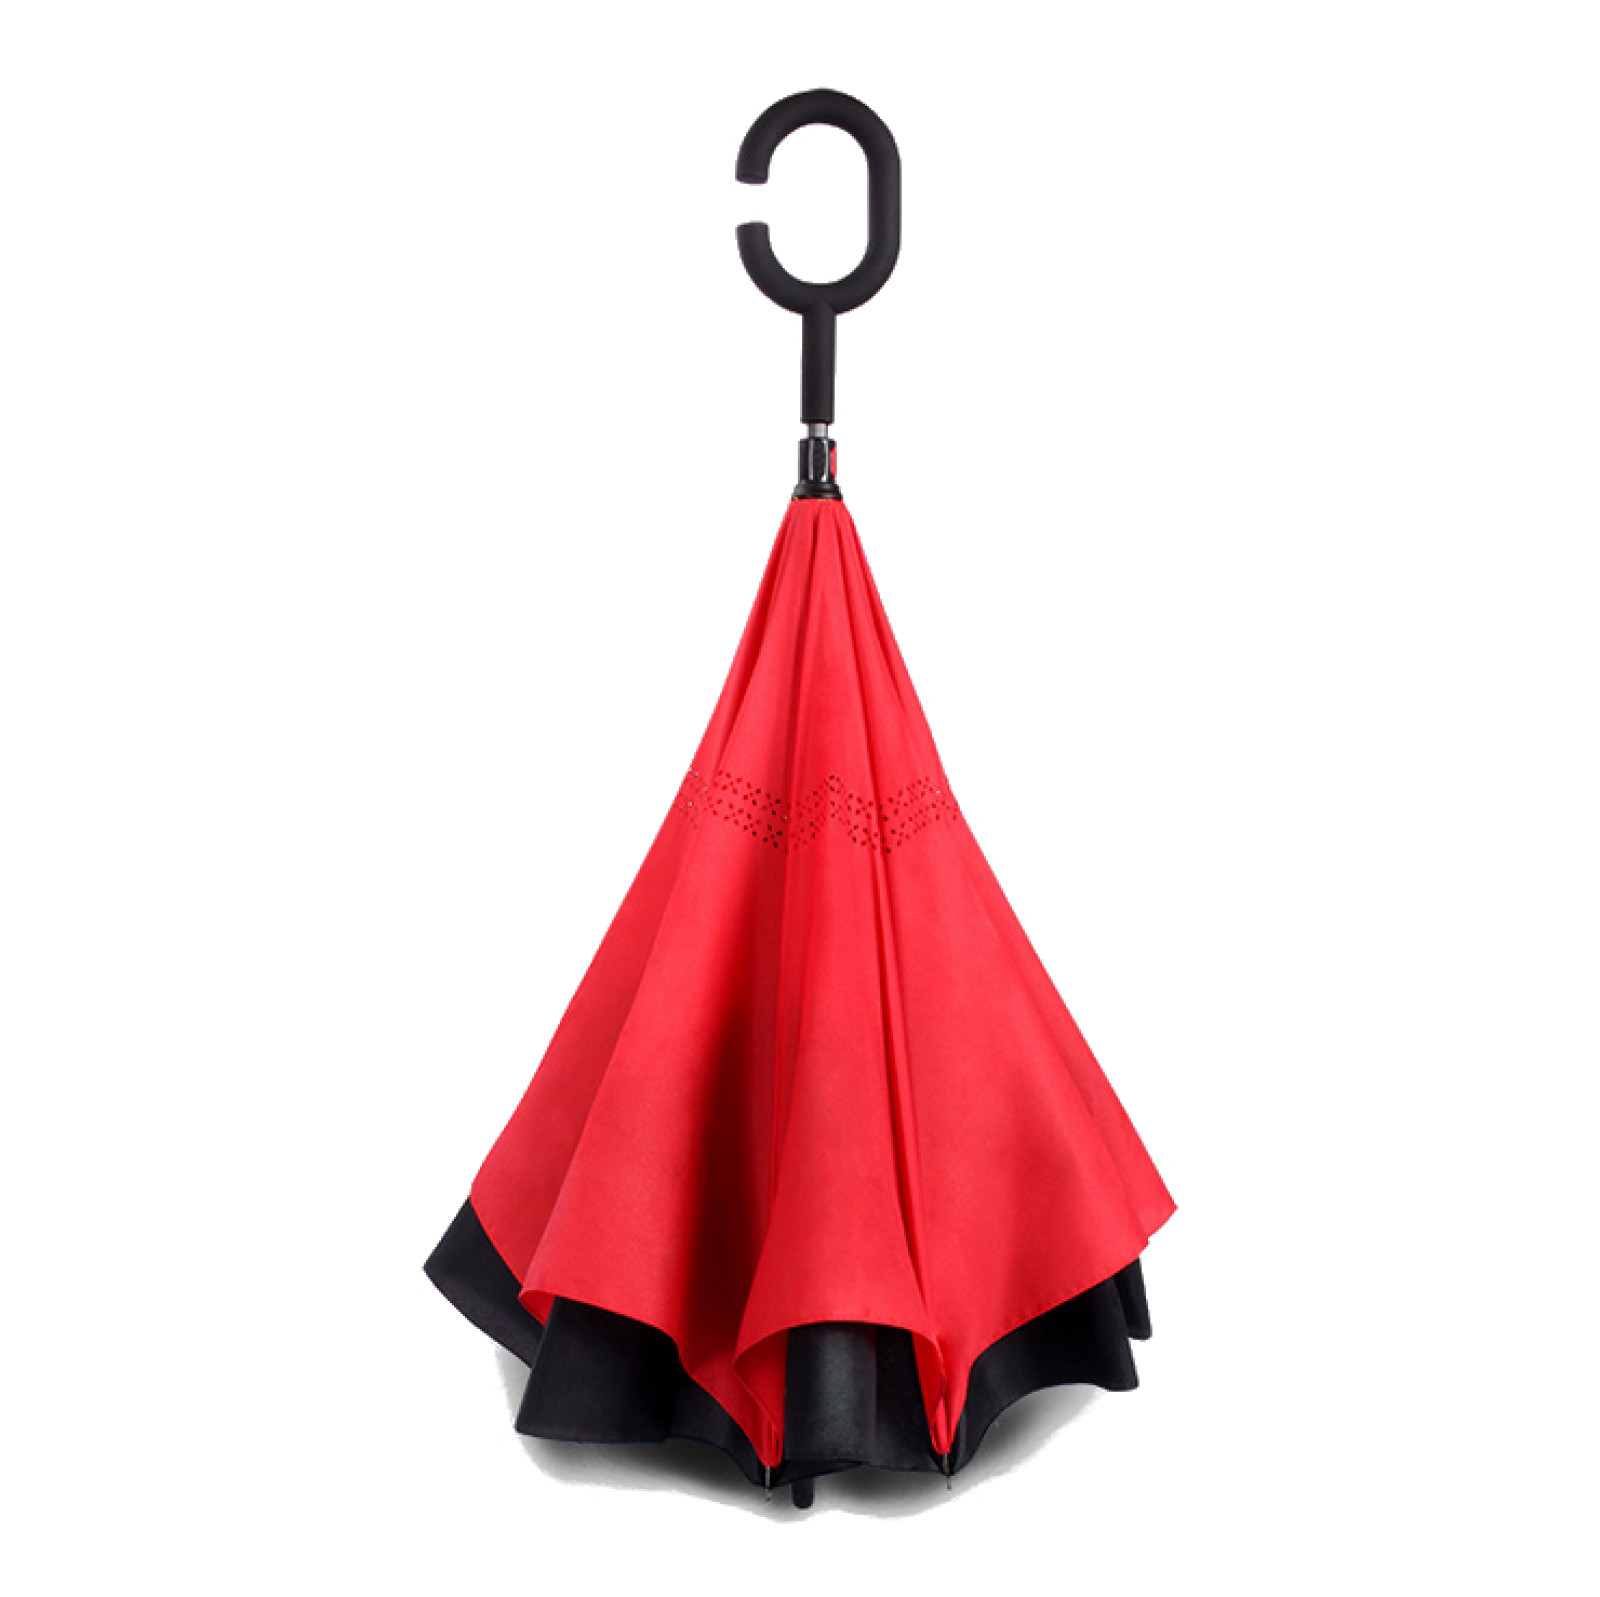 Зонт обратного сложения, антизонт, умный зонт, зонт наоборот Up Brella Красный 151024